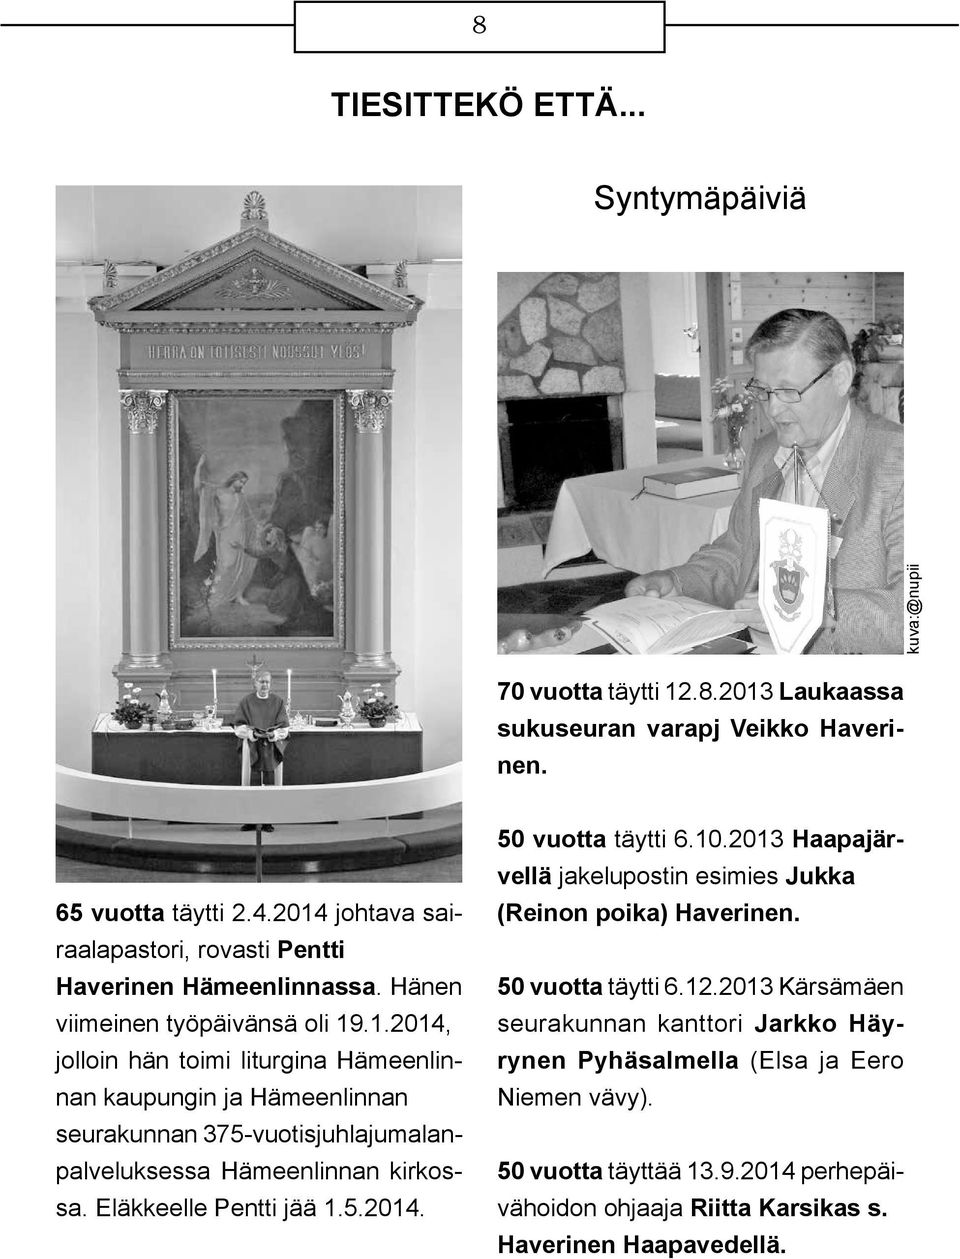 Eläkkeelle Pentti jää 1.5.2014. 50 vuotta täytti 6.10.2013 Haapajärvellä jakelupostin esimies Jukka (Reinon poika) Haverinen. 50 vuotta täytti 6.12.